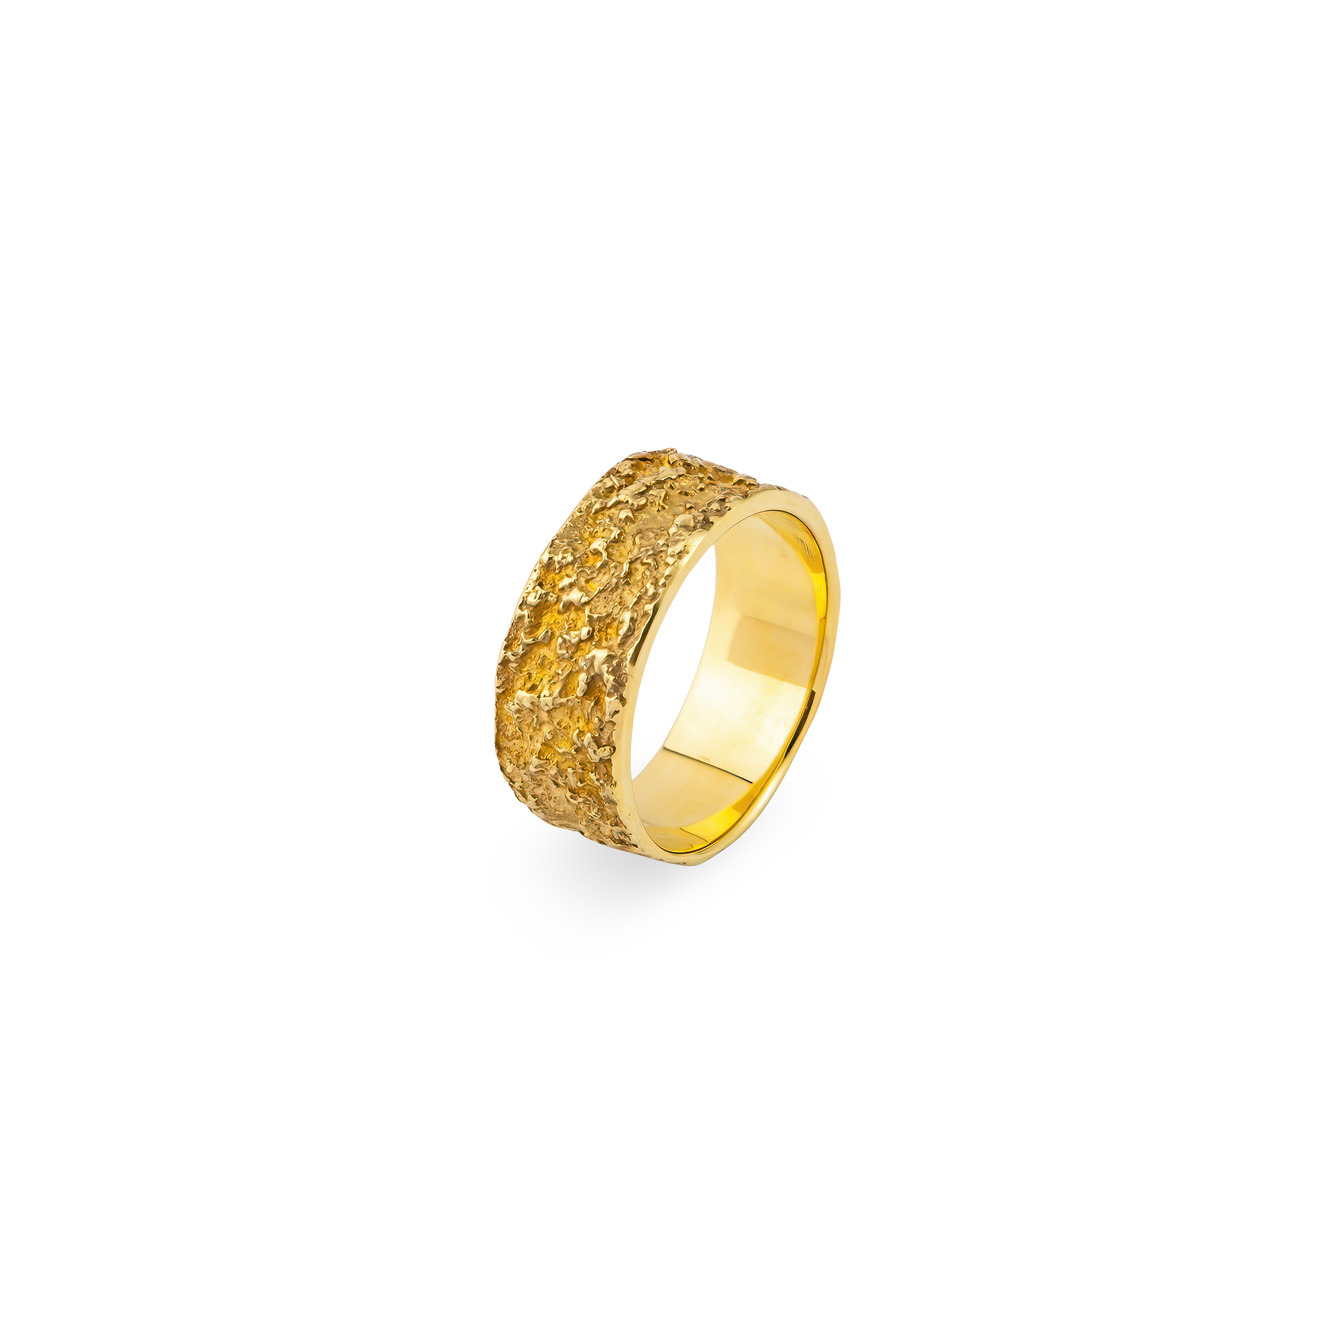 УРА jewelry Широкое позолоченное фактурное кольцо